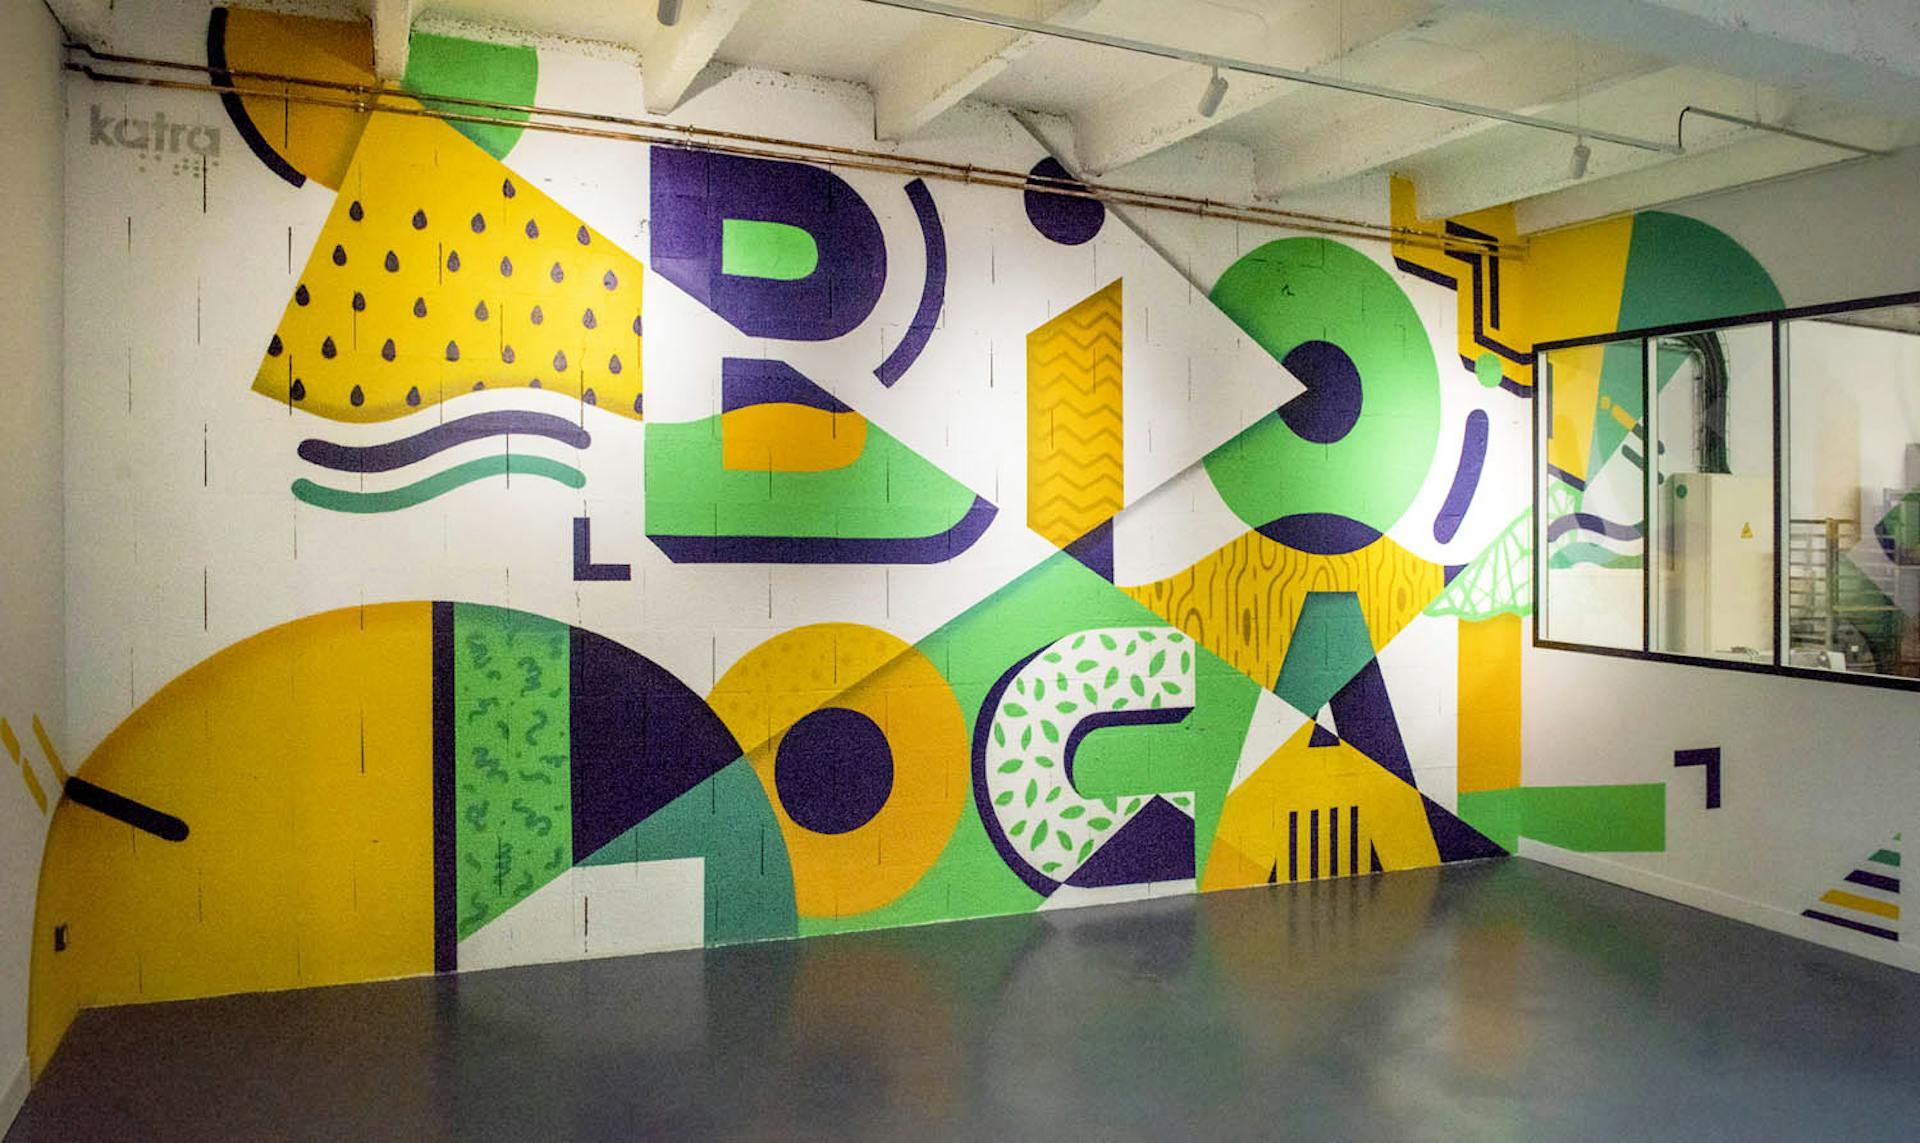 Un graffiti street art réalisée au coeur du "Hameau Bio" à Nantes par l'agence de design graphique Studio Katra. Représentation des mots-clés "Bio" et "Local".